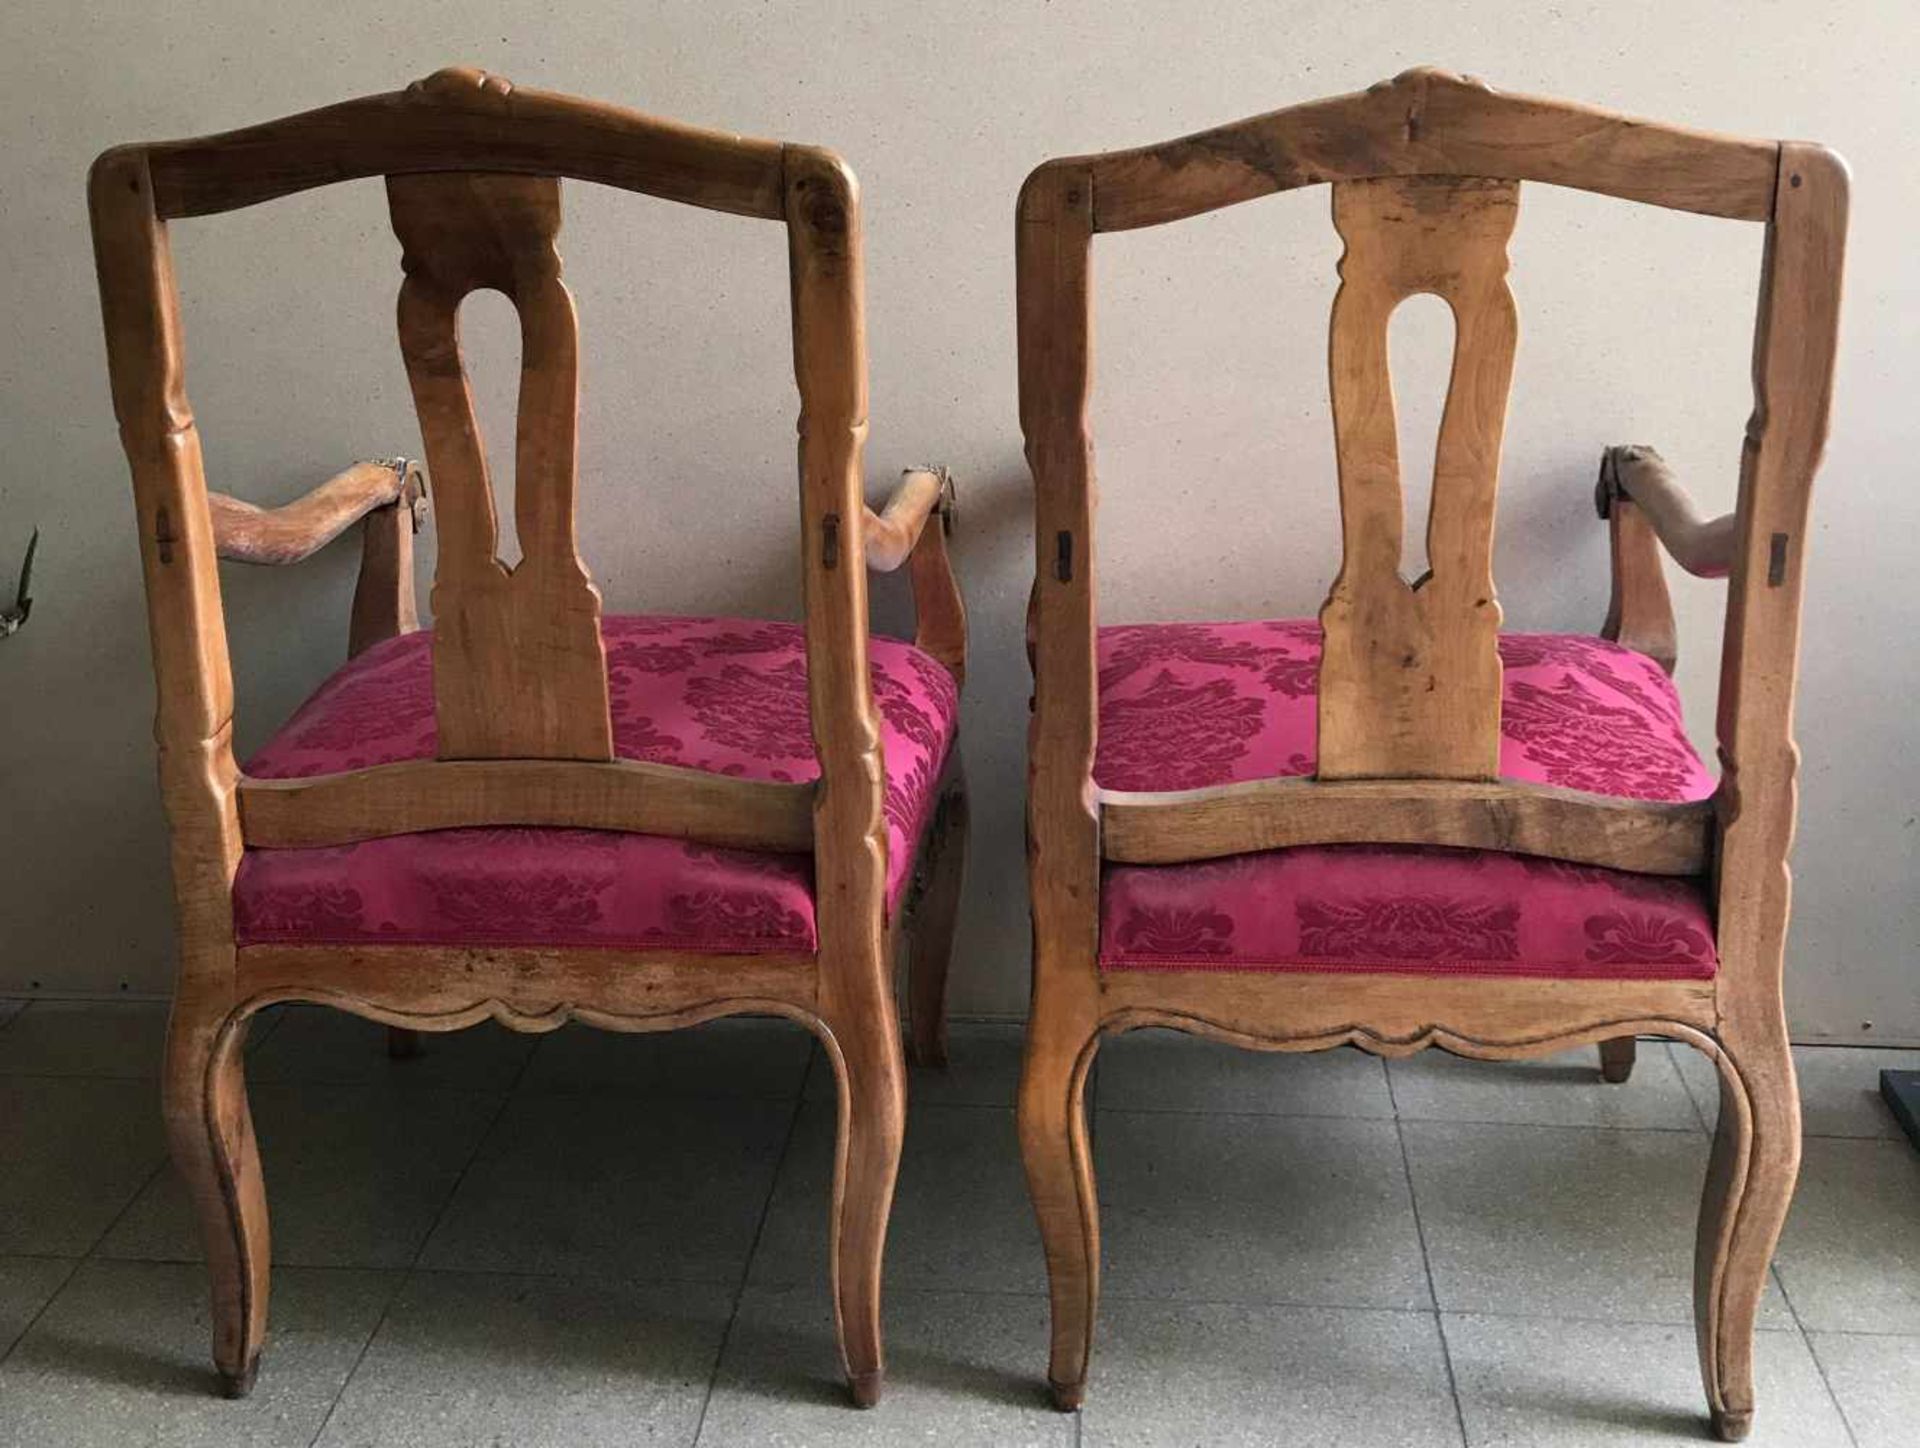 Paar große Sessel, süddeutsch, Barock/Rokoko, 19. Jh., Nussbaum und roter Bezug, Altersspuren, - Bild 6 aus 6